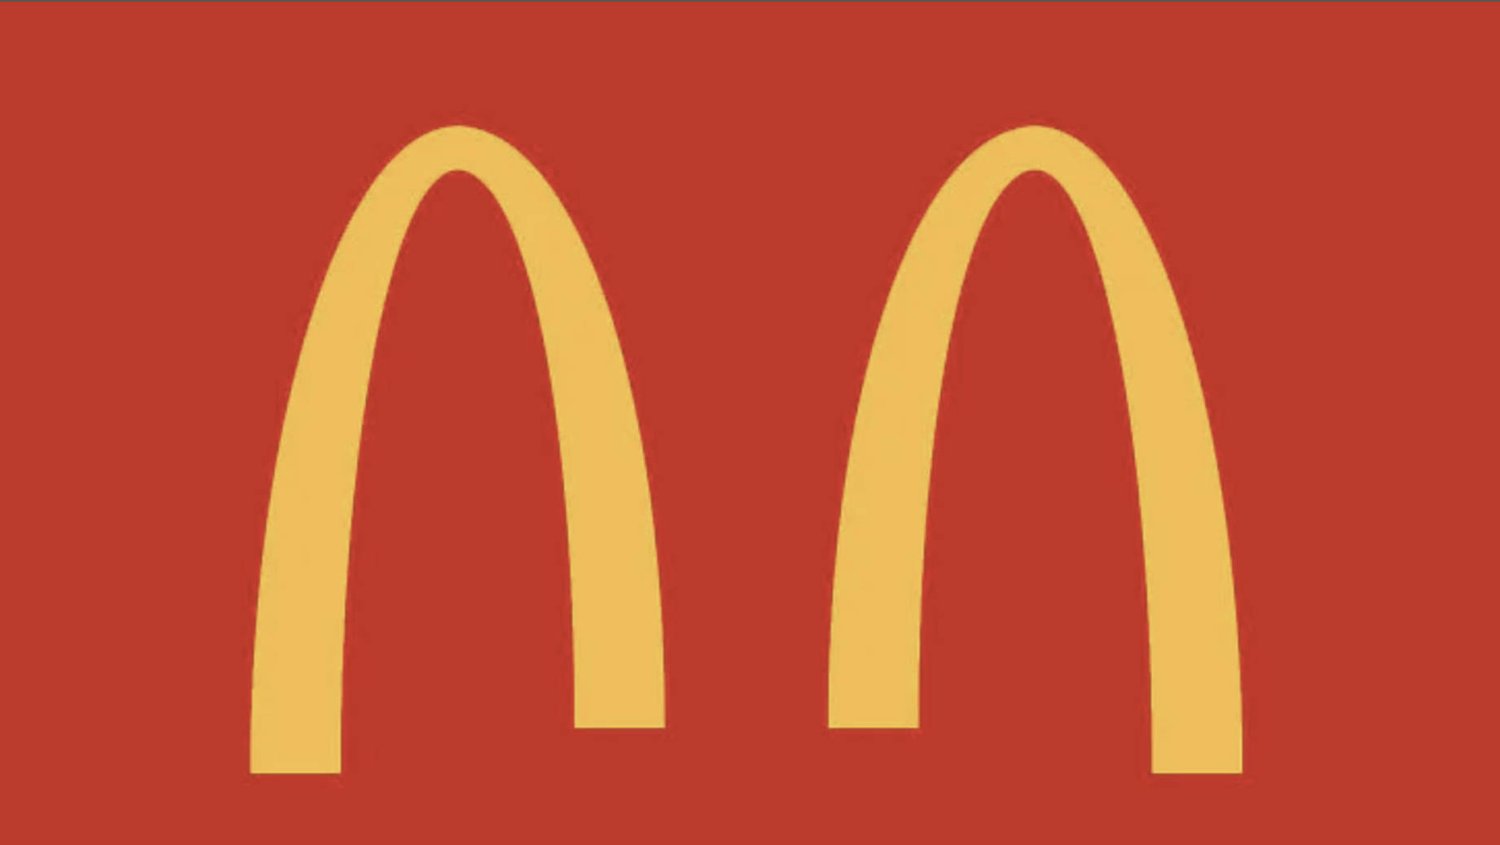 Socially distanced McDonald's logo